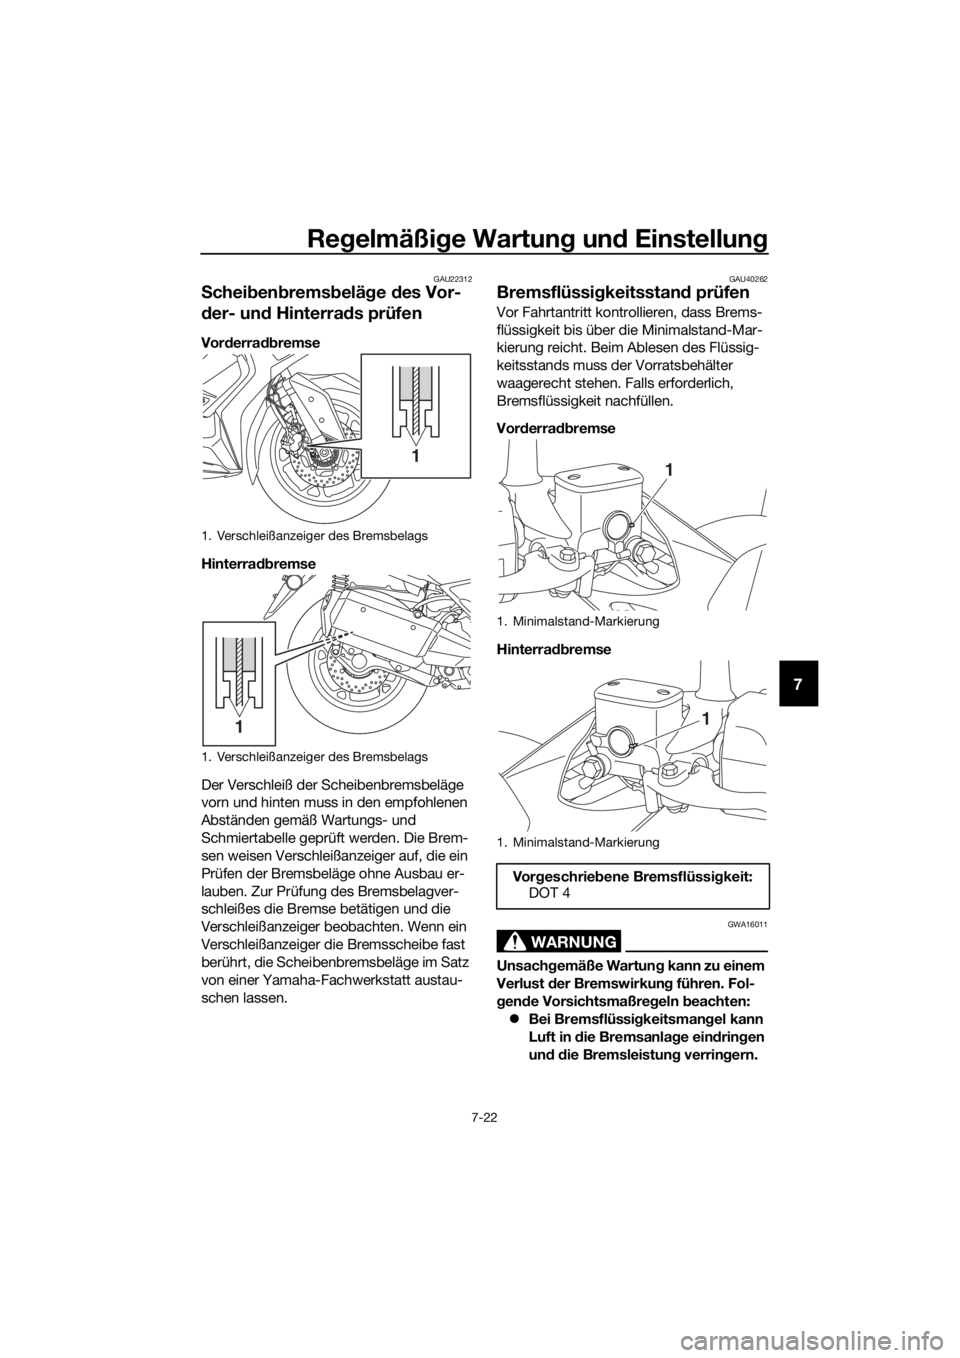 YAMAHA XMAX 300 2018  Betriebsanleitungen (in German) Regelmäßige Wartung und Einstellung
7-22
7
GAU22312
Scheibenbremsbeläge des Vor-
der- und Hinterrads prüfen
Vorderradbremse
Hinterradbremse
Der Verschleiß der Scheibenbremsbeläge 
vorn und hinte